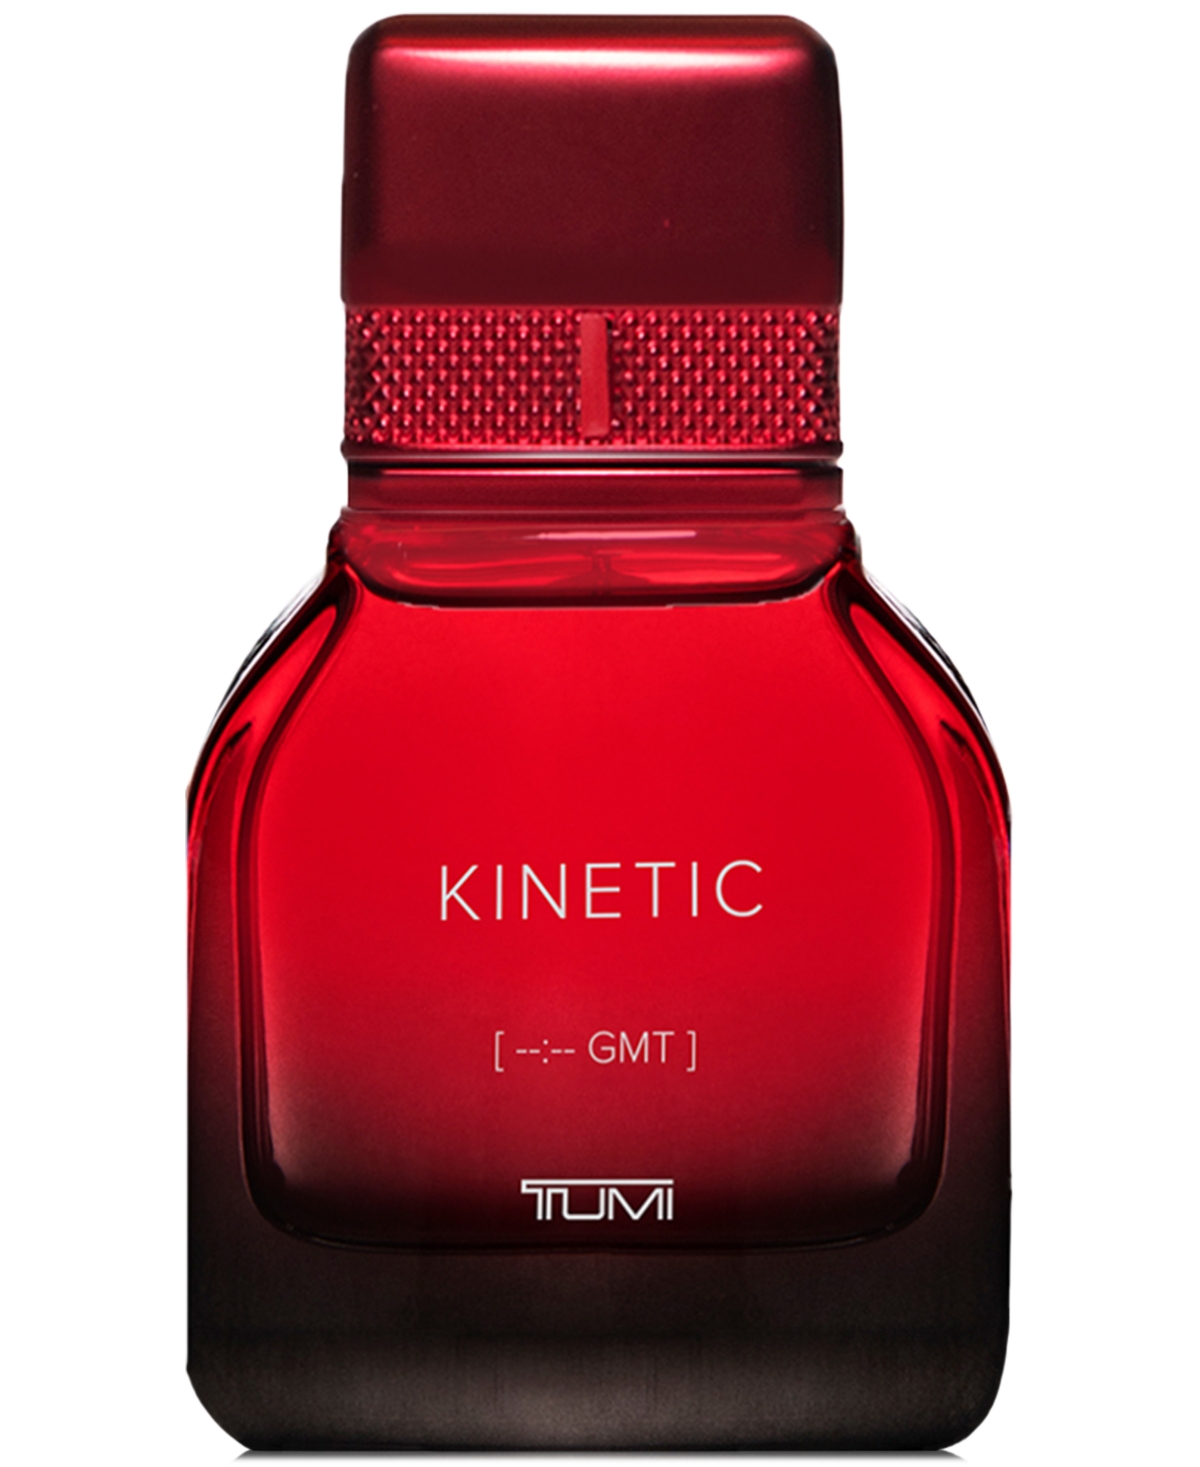 Men's Kinetic [--:-- Gmt] Eau de Parfum Spray, 1 oz.